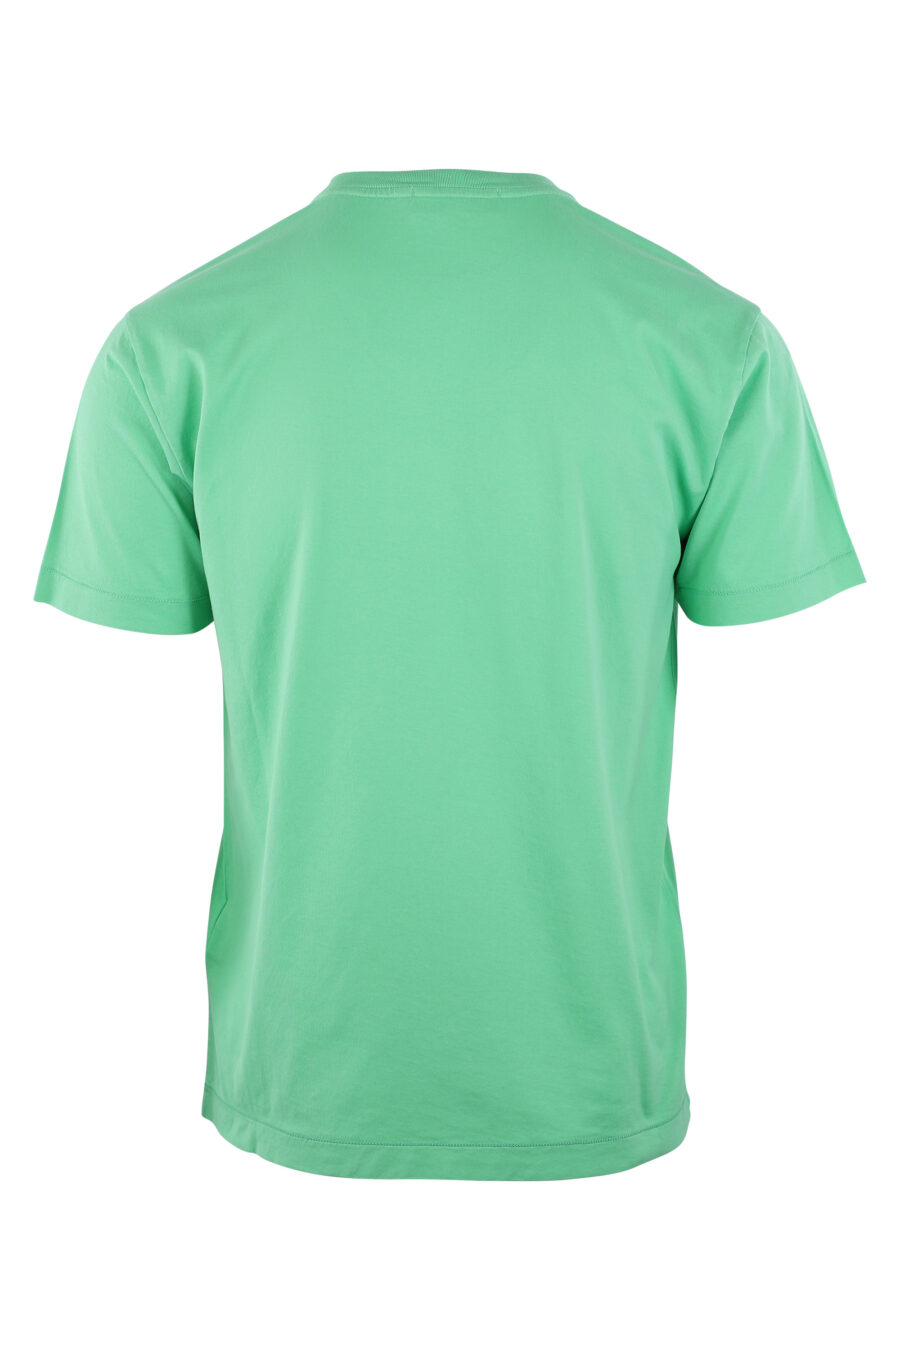 T-shirt vert clair avec logo - IMG 3143